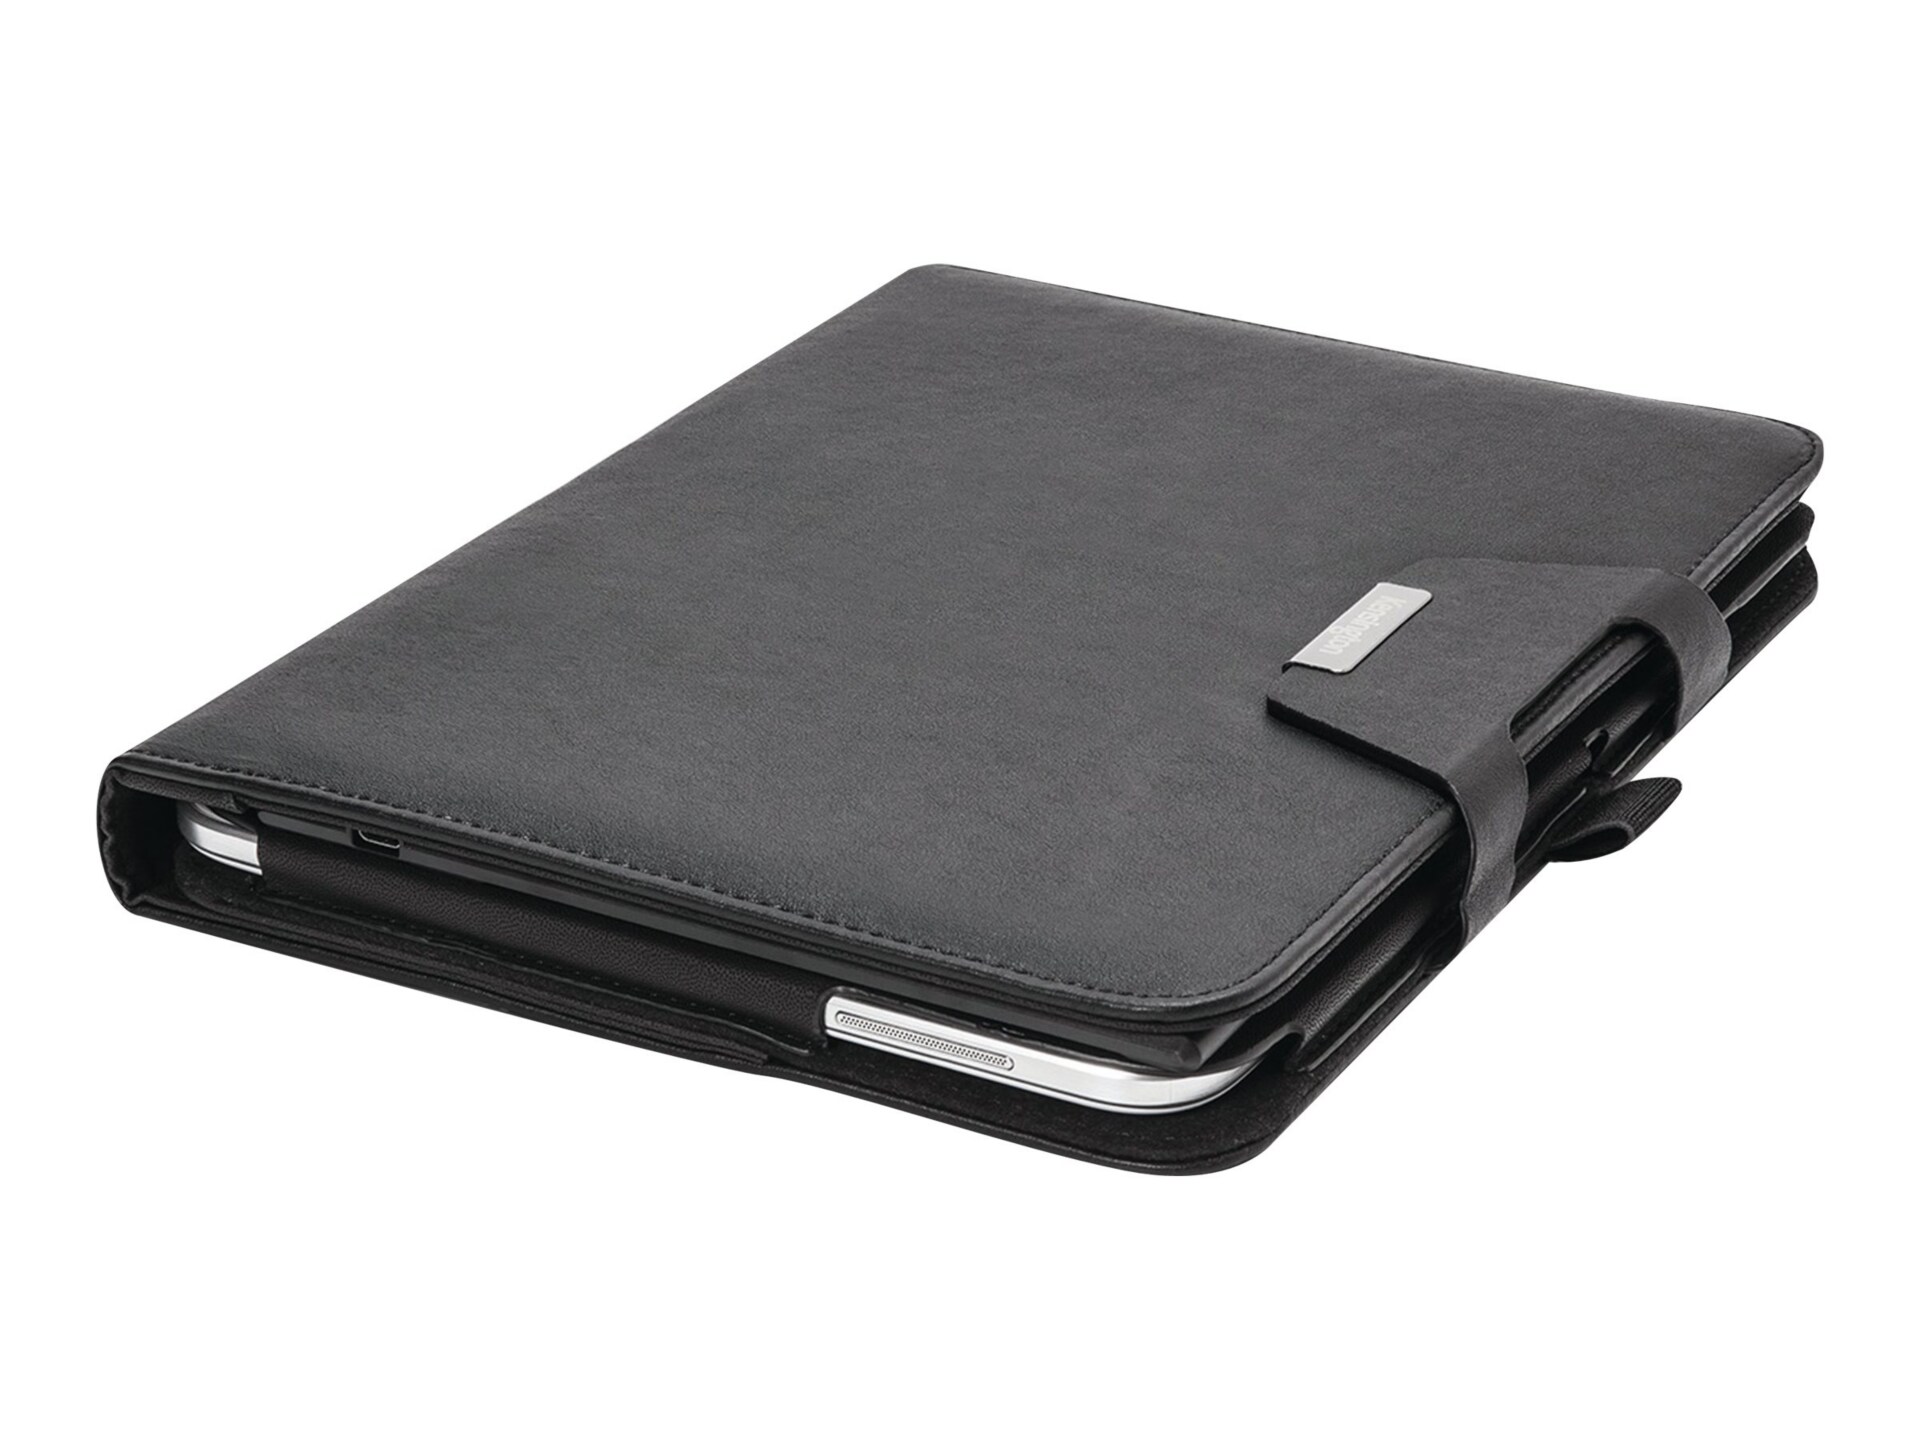 Kensington KeyFolio Pro Keyboard Folio Case for Galaxy Tab 3 - Black